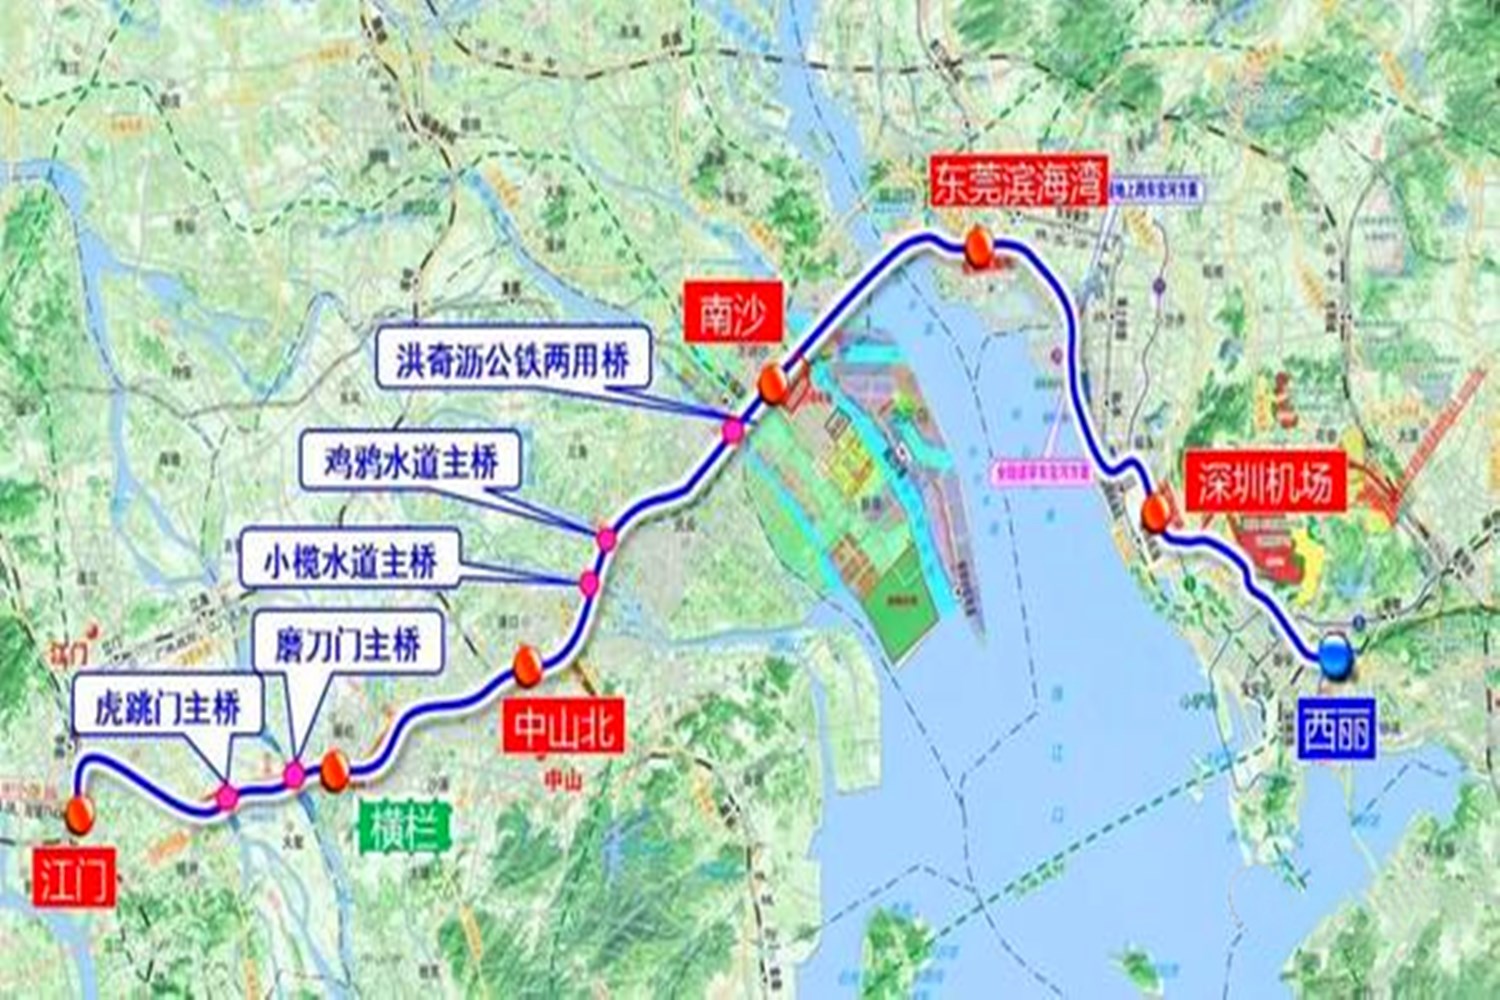 深圳在建一条铁路线对接江门,全长1161公里,桥隧比达到98%